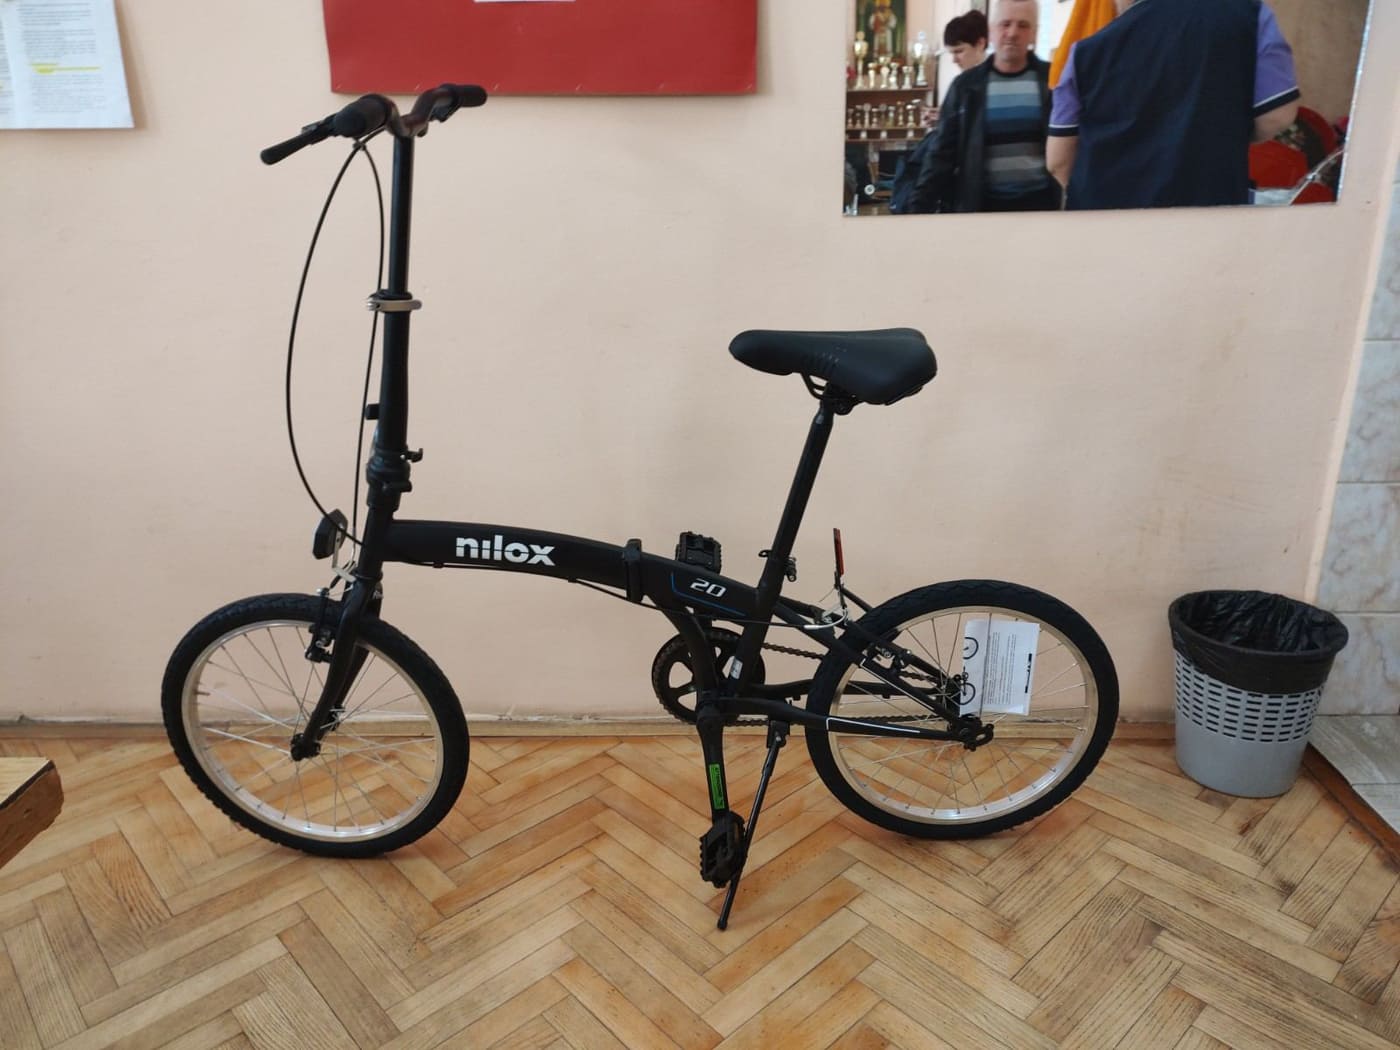 Mesna zajednica Jabuka uručila bicikl učenici škole